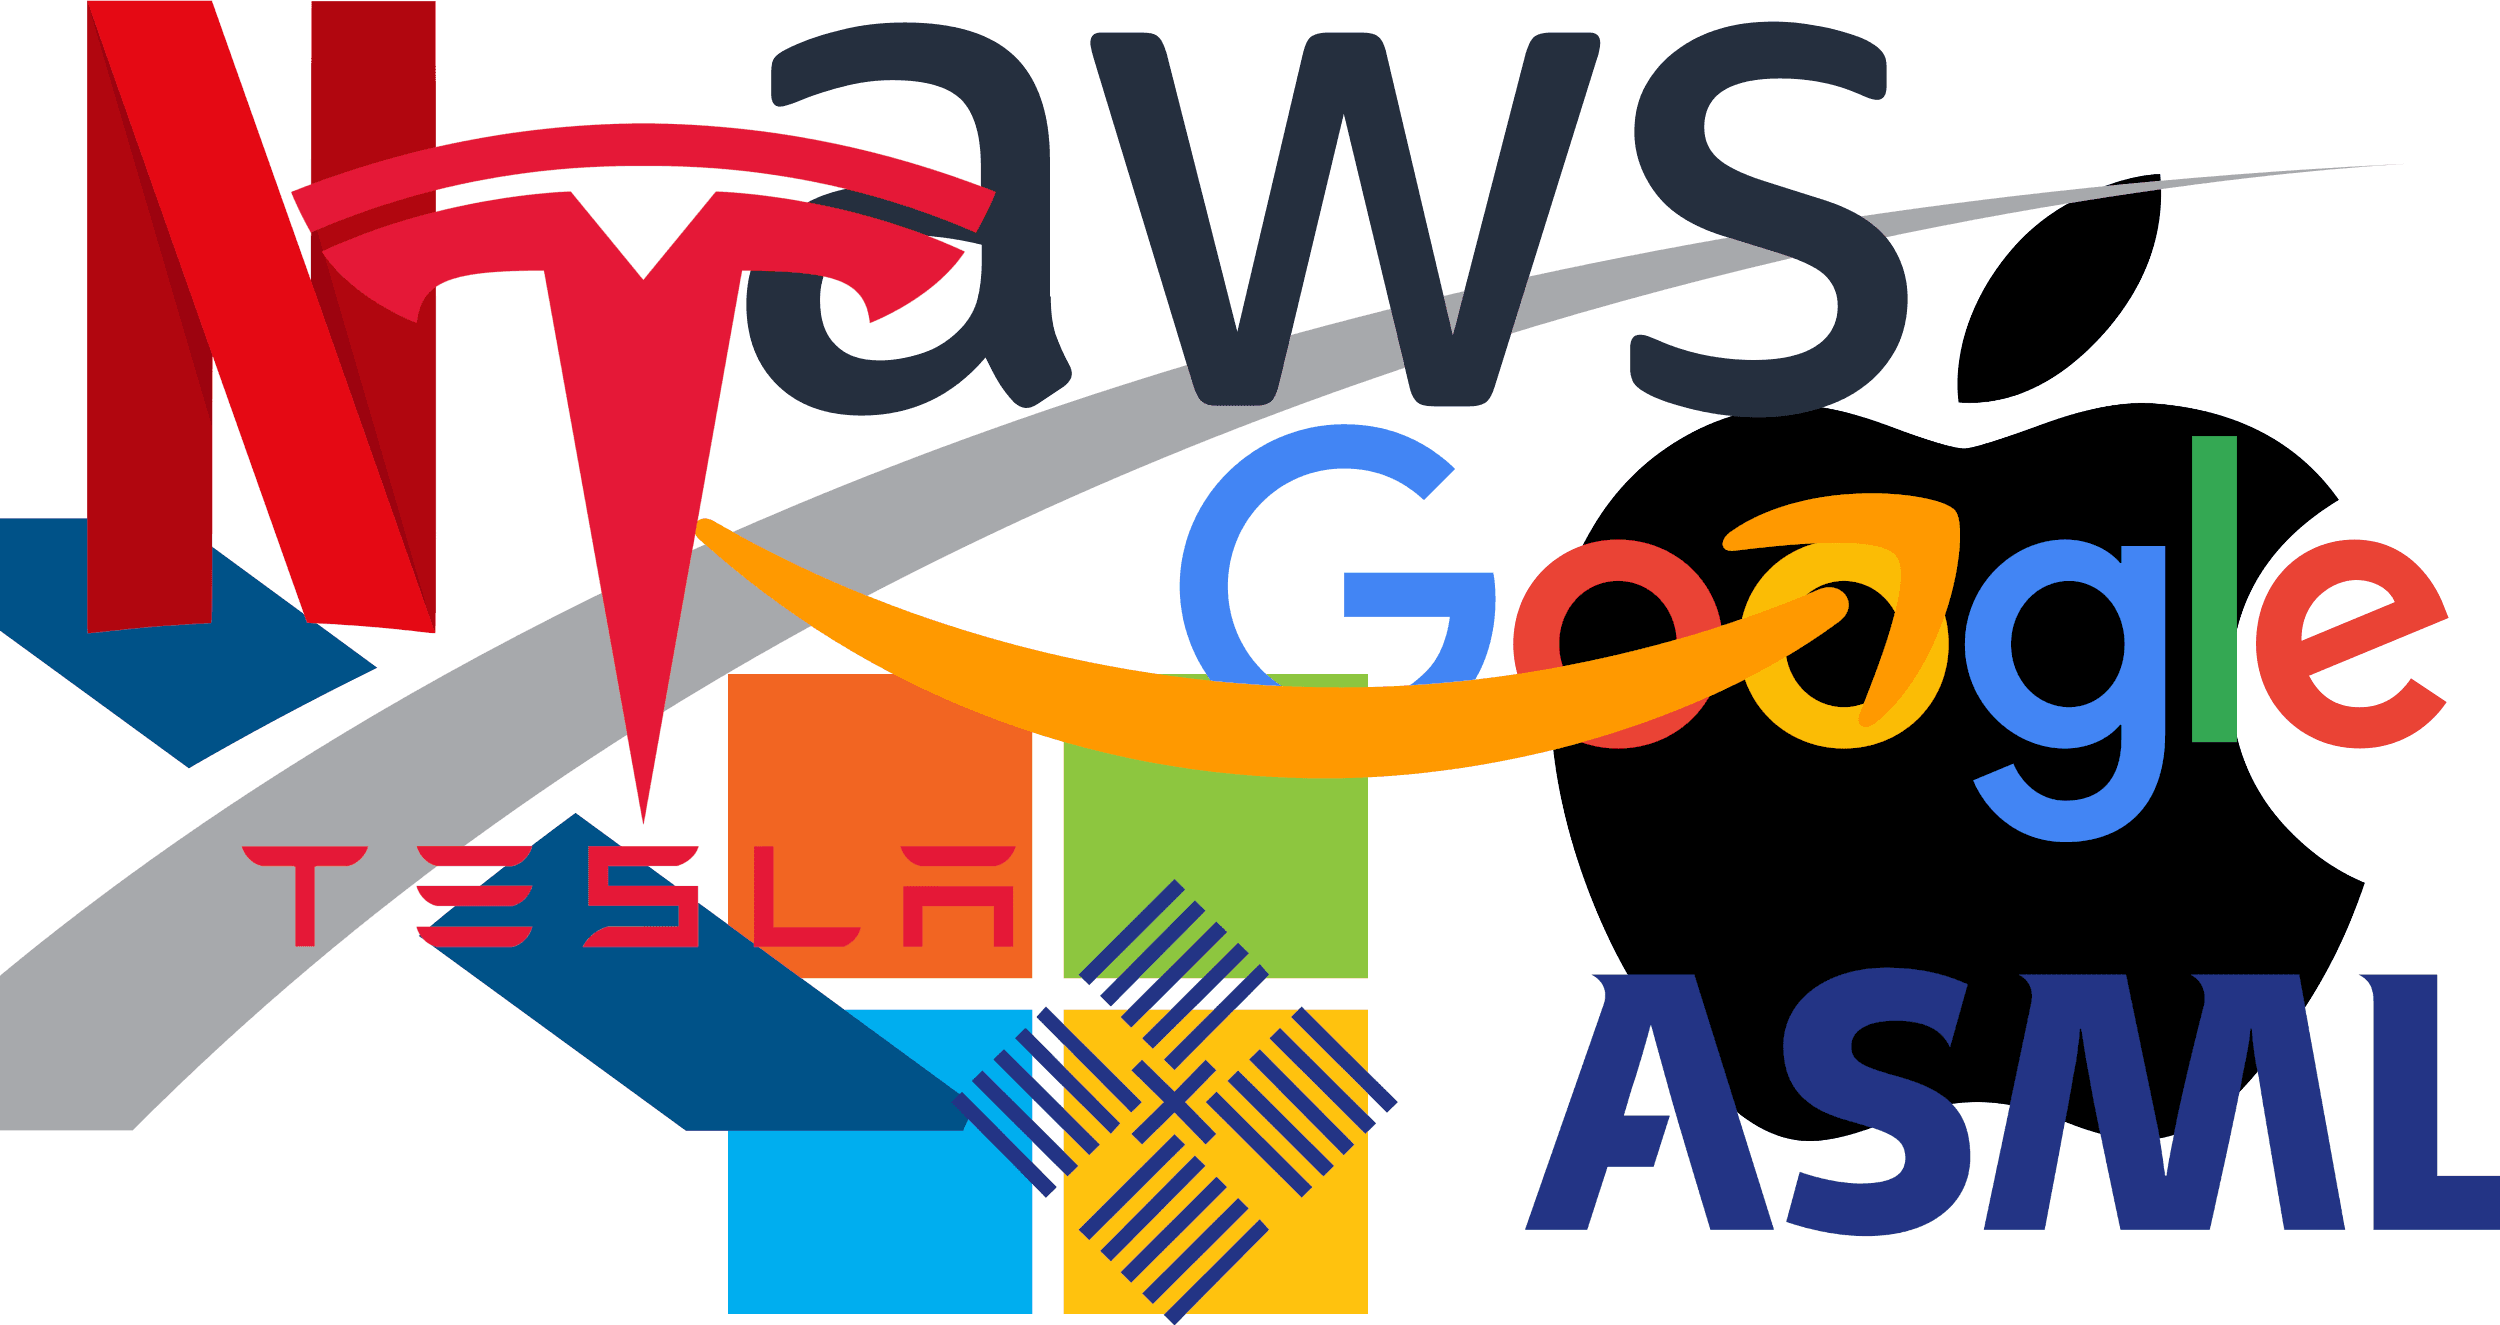 Industry logos